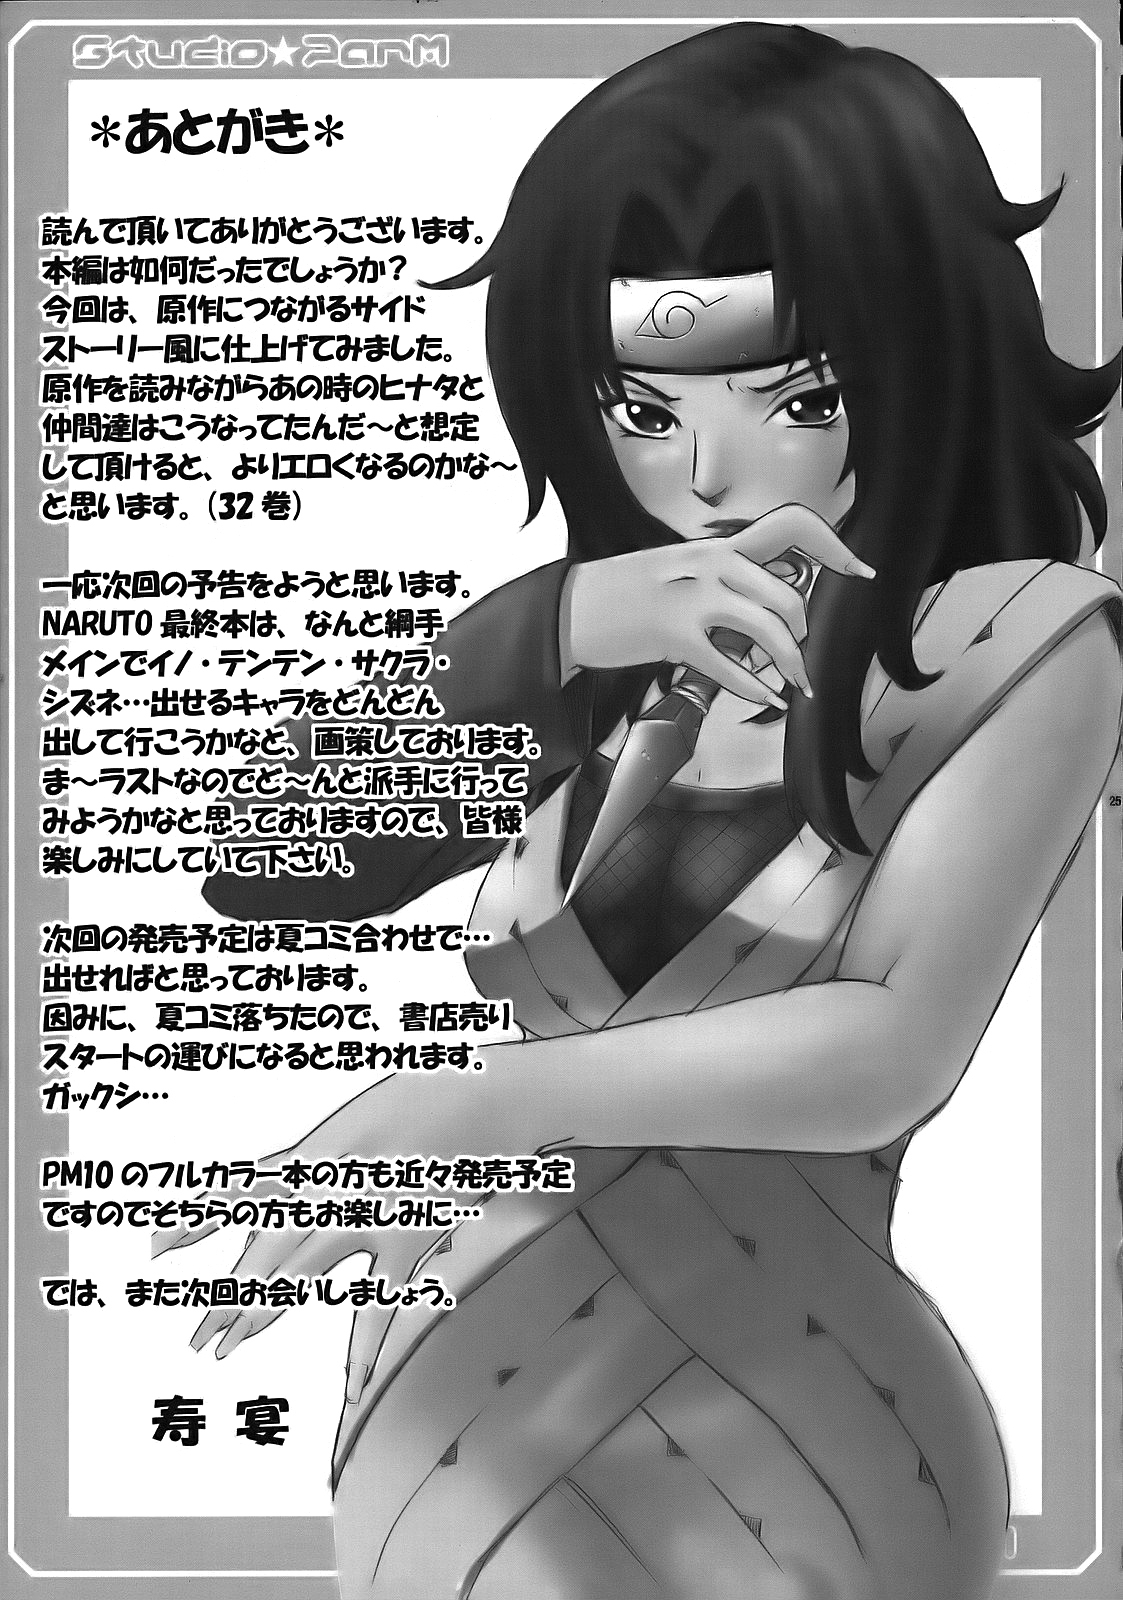 PM 10 - Indecent Ninja Training naruto 25 hentai manga